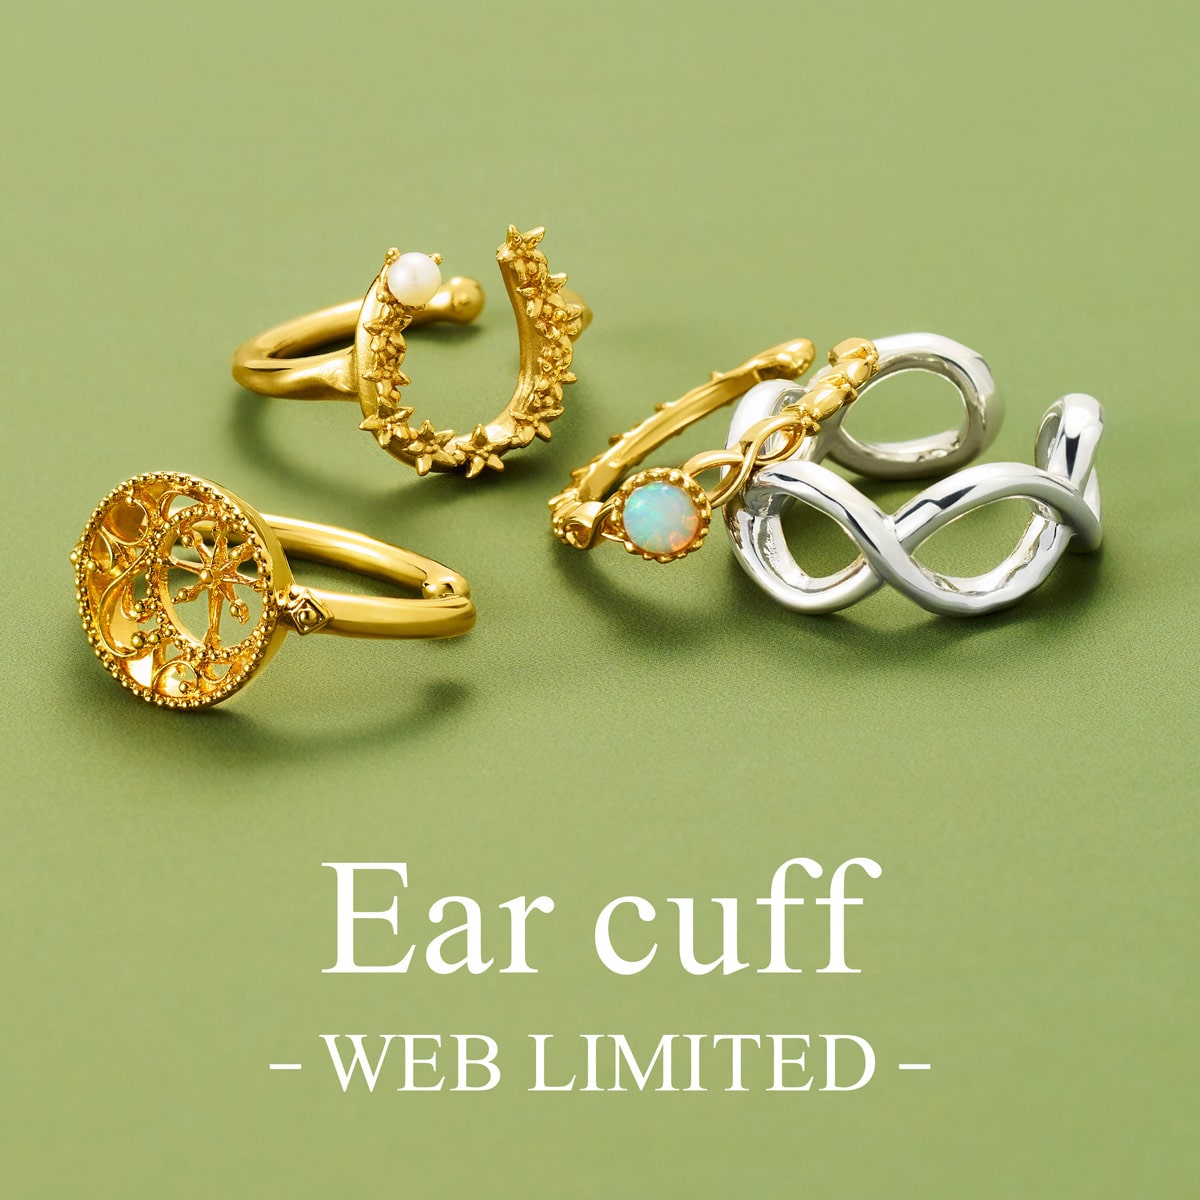 【WEB LIMITED - Ear cuff - 】